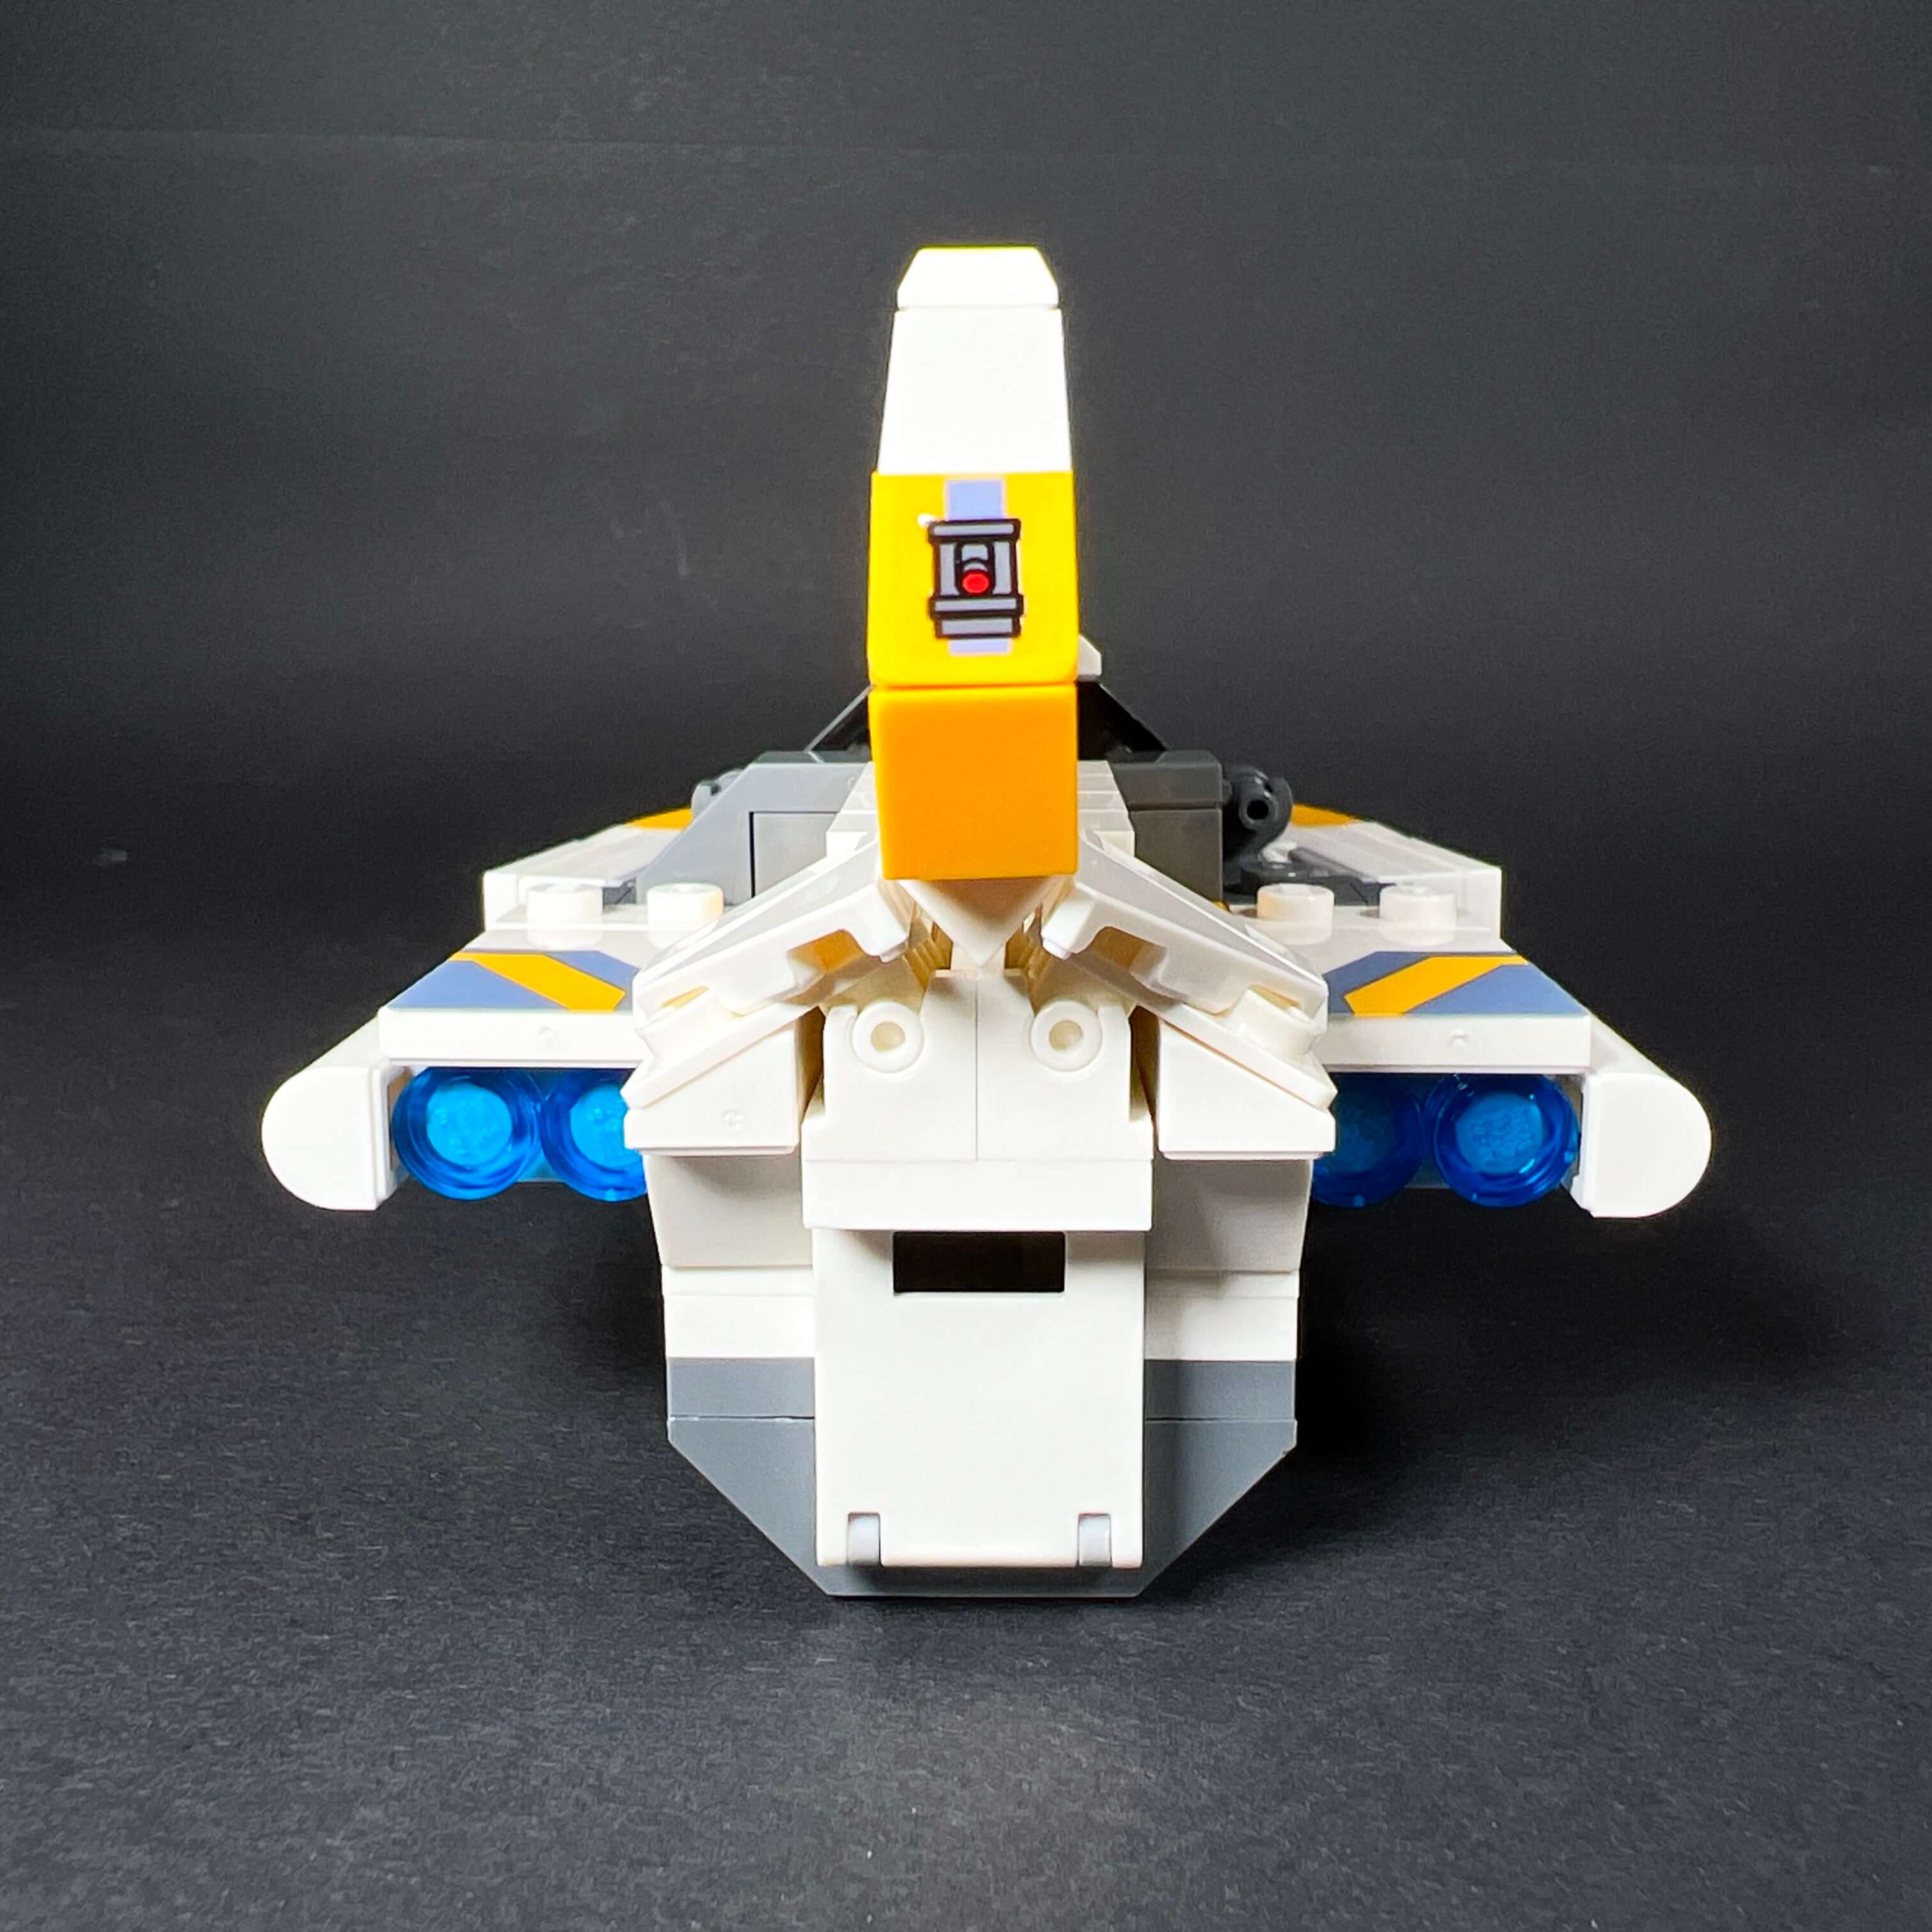 Bon plan Lego Star Wars : le Faucon Millenium en réduction 